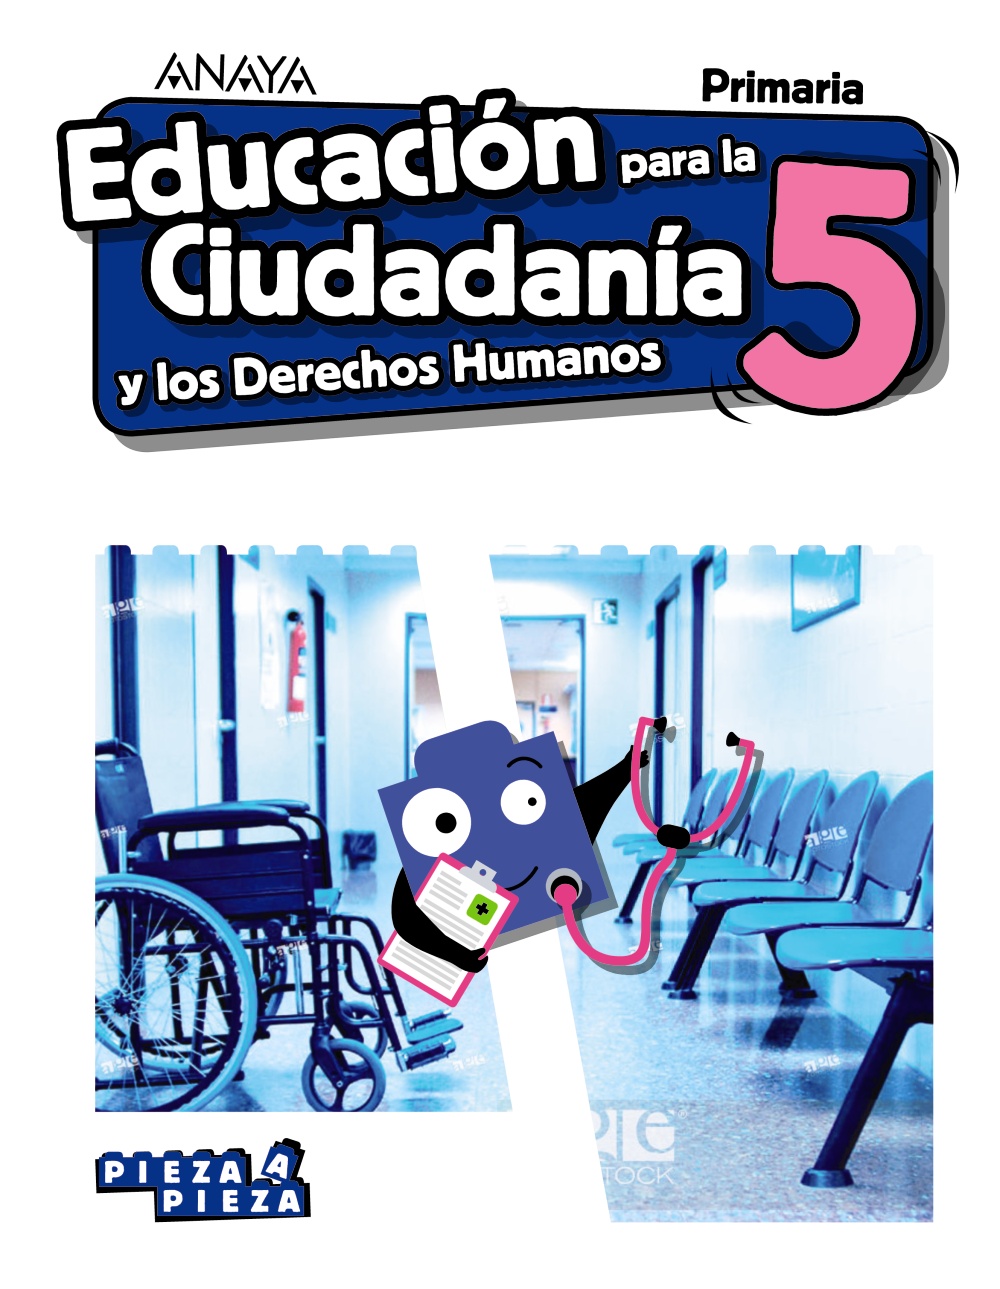 Solucionario Educacion para la Ciudadania 5 Primaria Anaya Pieza a Pieza PDF Ejercicios Resueltos-pdf